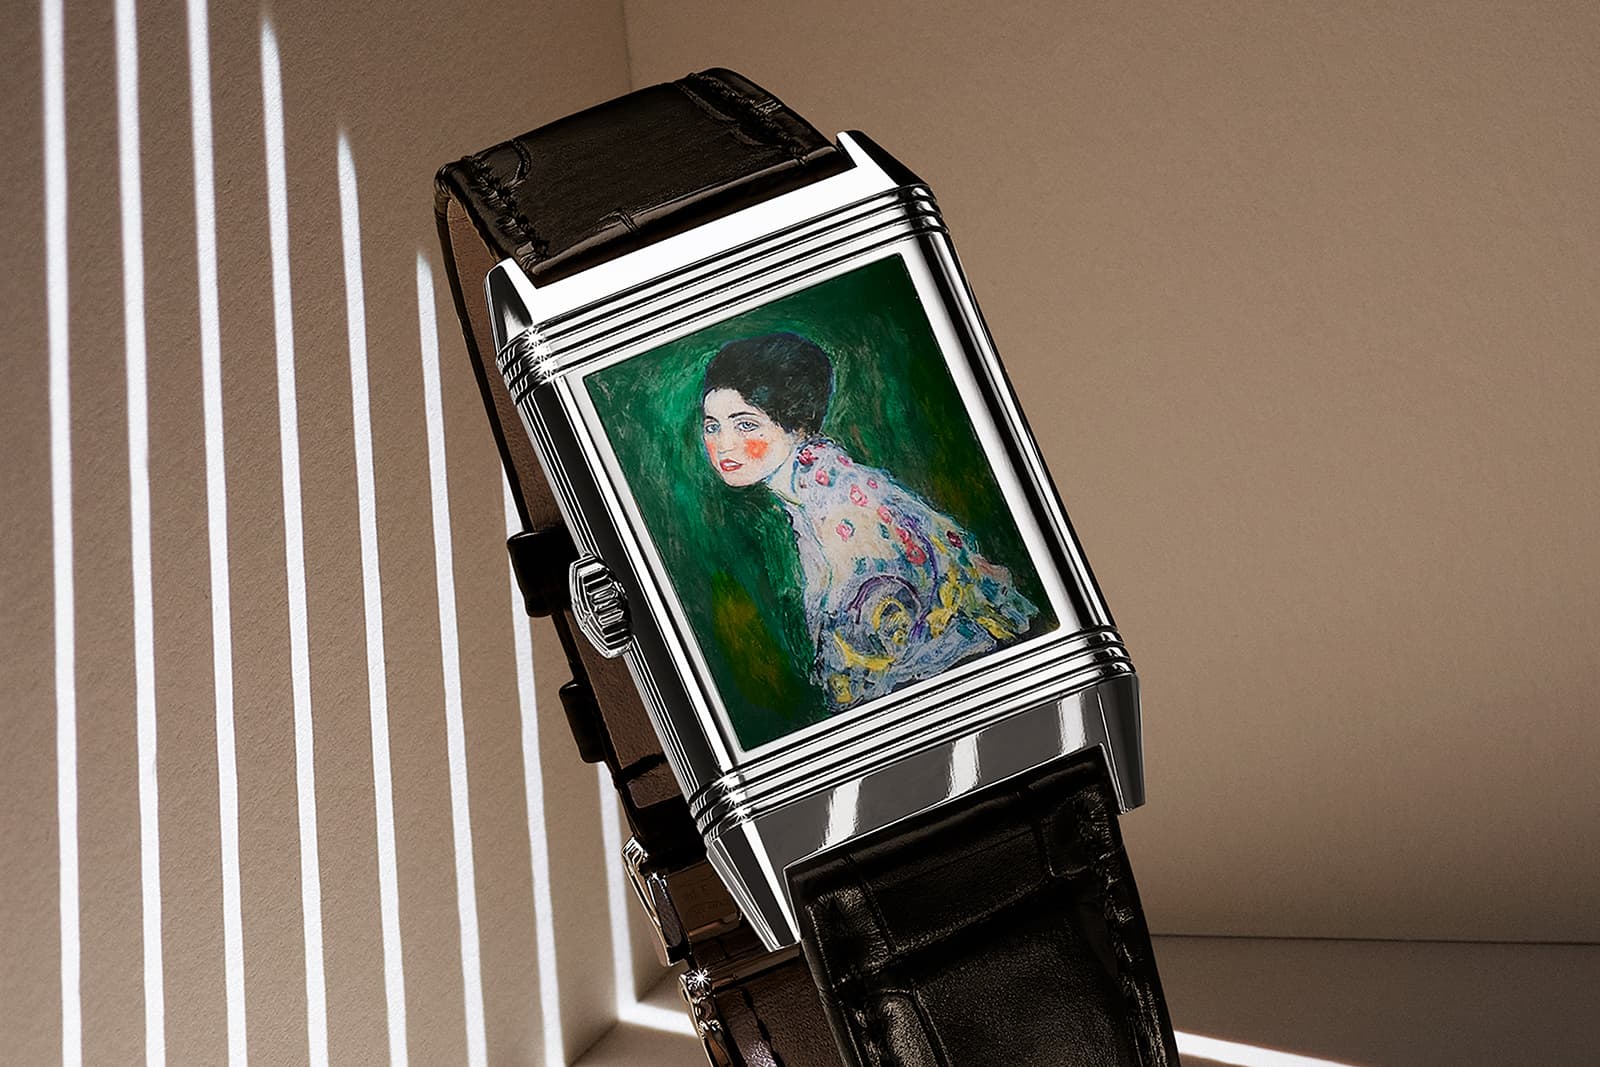 Часы Jaeger-LeCoultre Reverso Tribute Enamel Hidden Treasures с миниатюрной версией картины  Густава Климта «Женский портрет» (1917 г.) на задней крышке